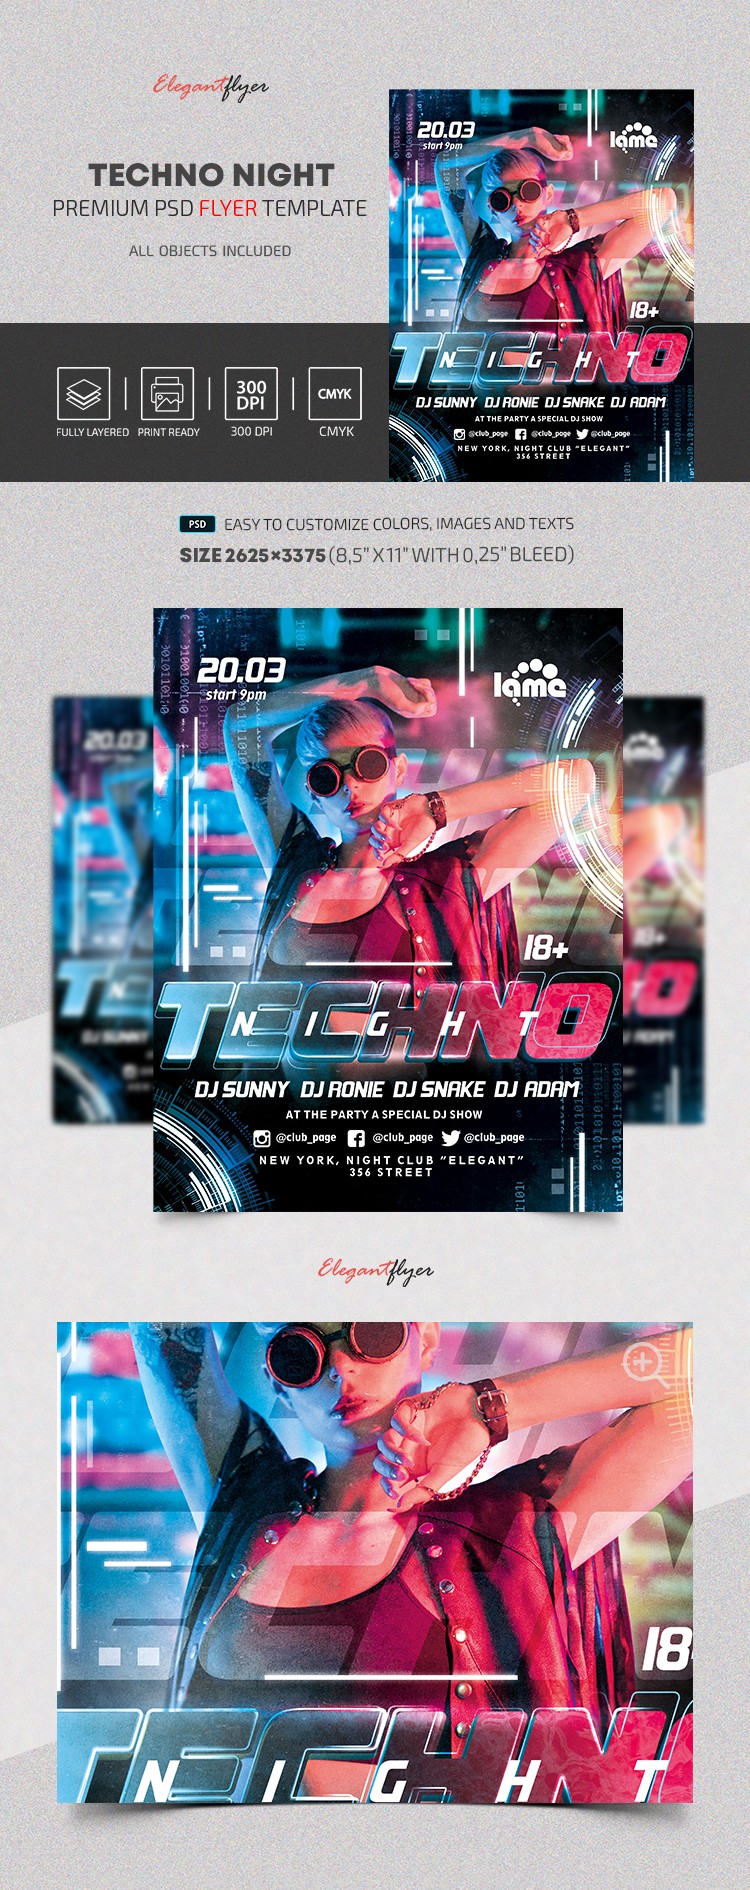 Techno Nacht Flyer by ElegantFlyer